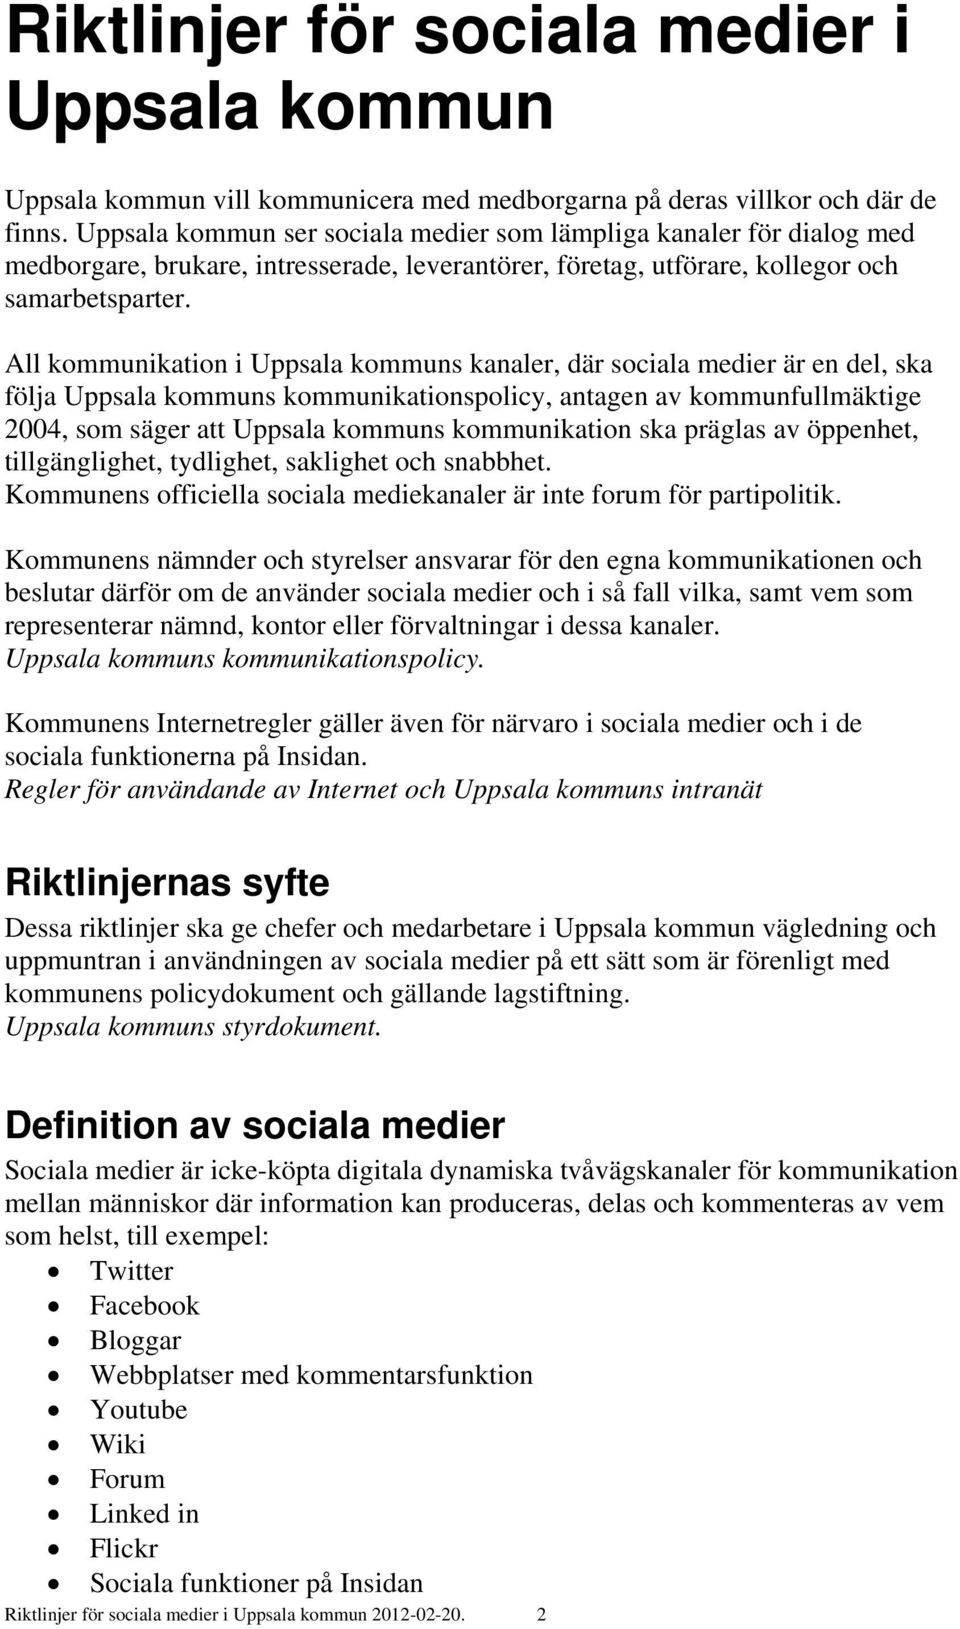 All kommunikation i Uppsala kommuns kanaler, där sociala medier är en del, ska följa Uppsala kommuns kommunikationspolicy, antagen av kommunfullmäktige 2004, som säger att Uppsala kommuns